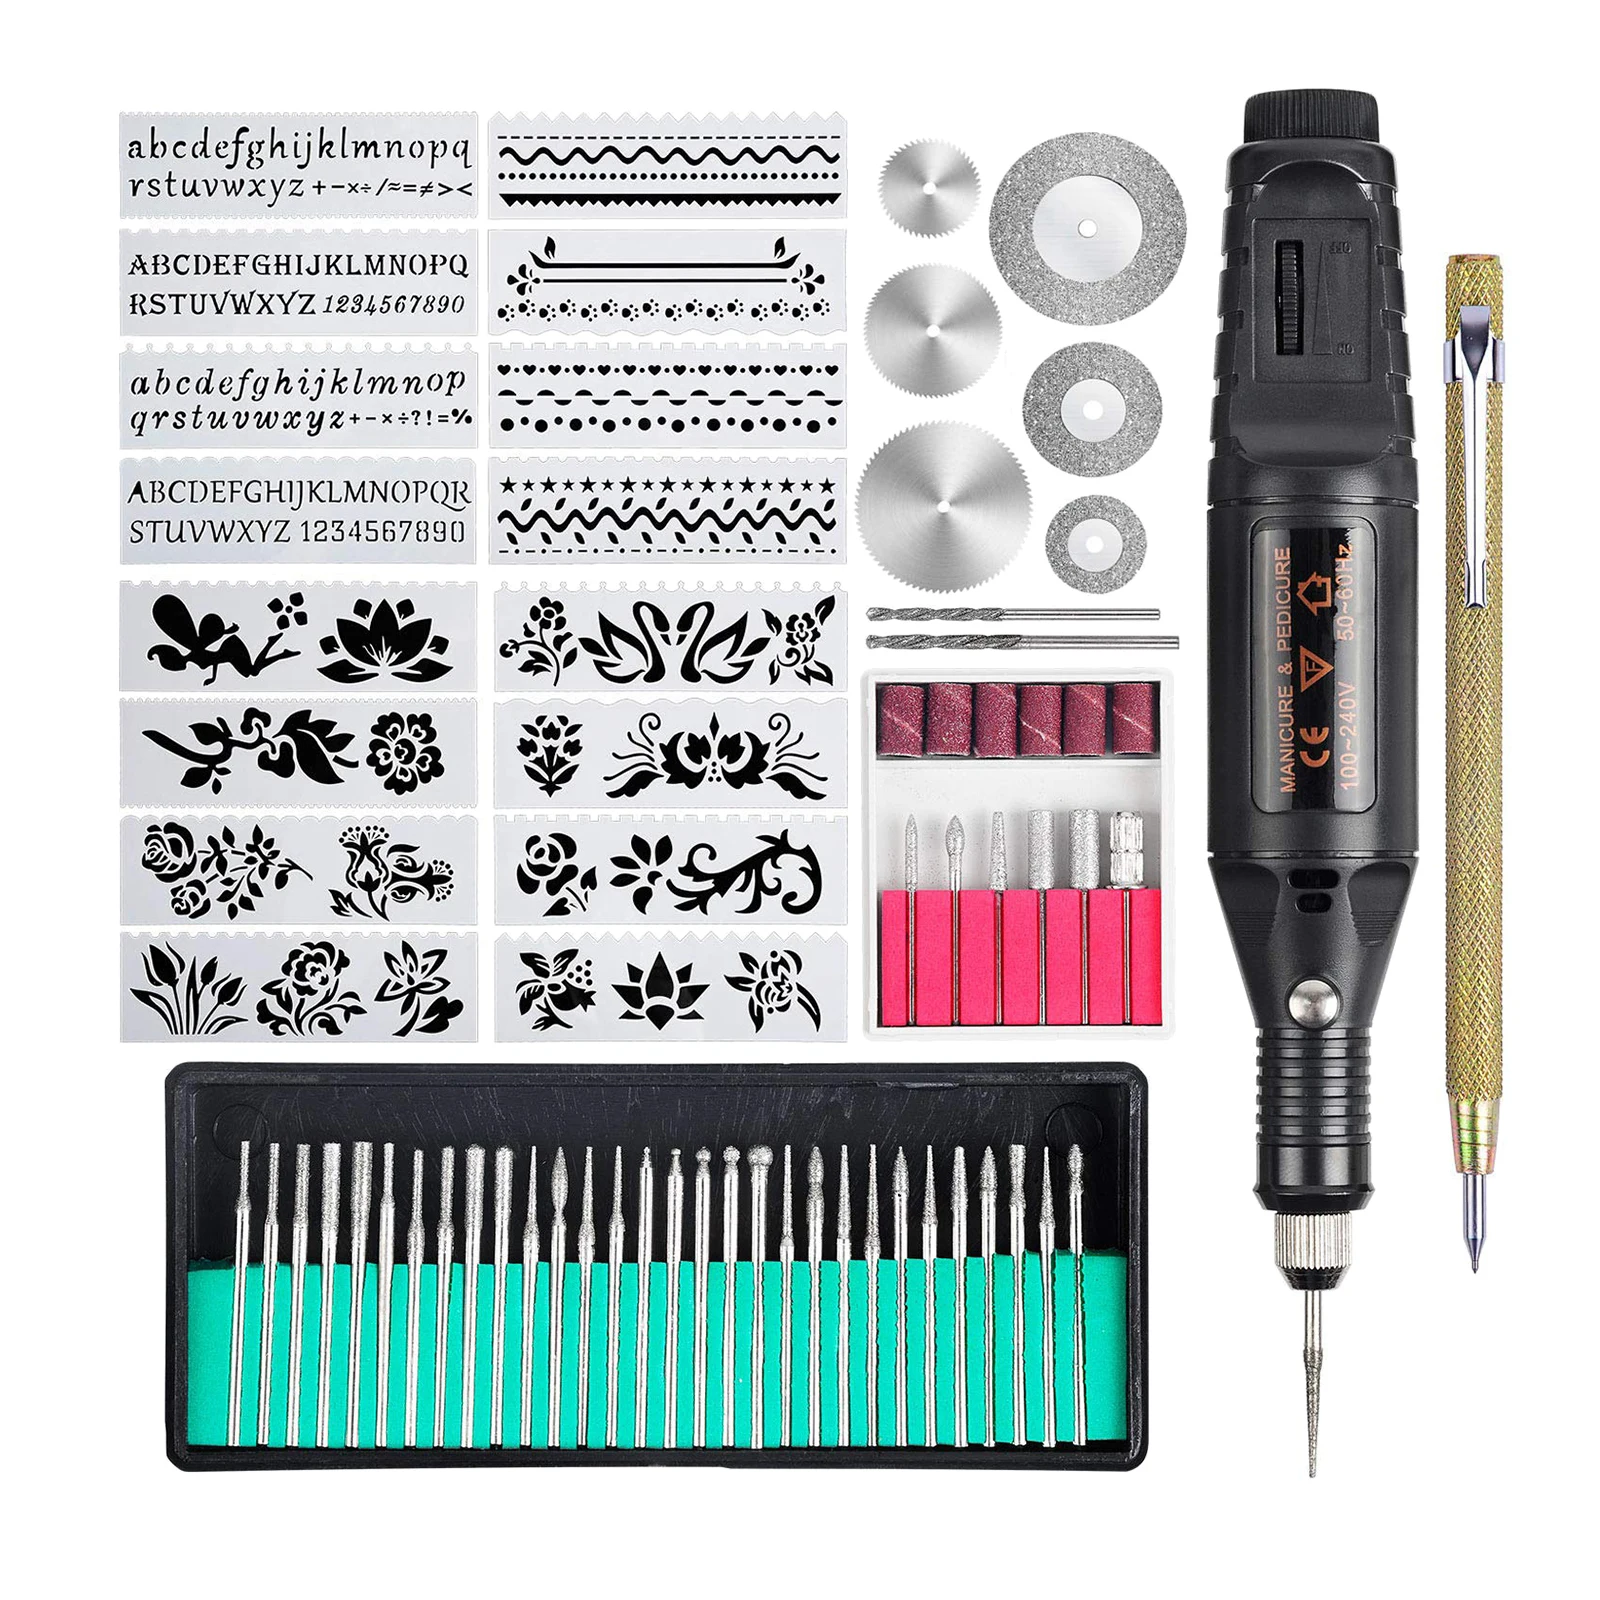 Gravor Electric Mini Gravură Pen Kit Rotoray Trusa de scule pentru Metal, Sticlă, Ceramică Bijuterii Diy, UE Plug 5